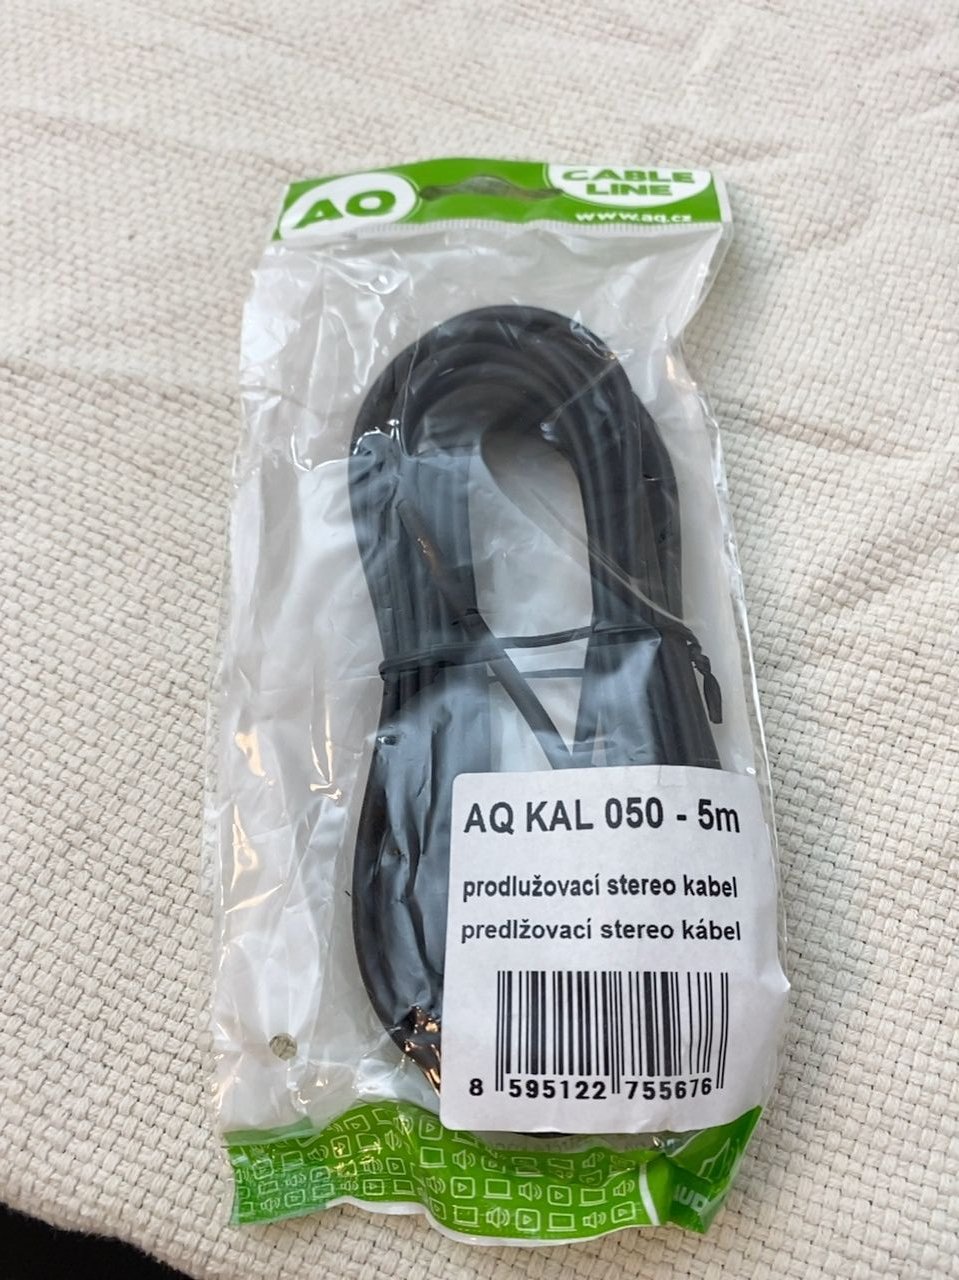 Prodlužovací stereo kabel  AQ KAL 050 - 5m